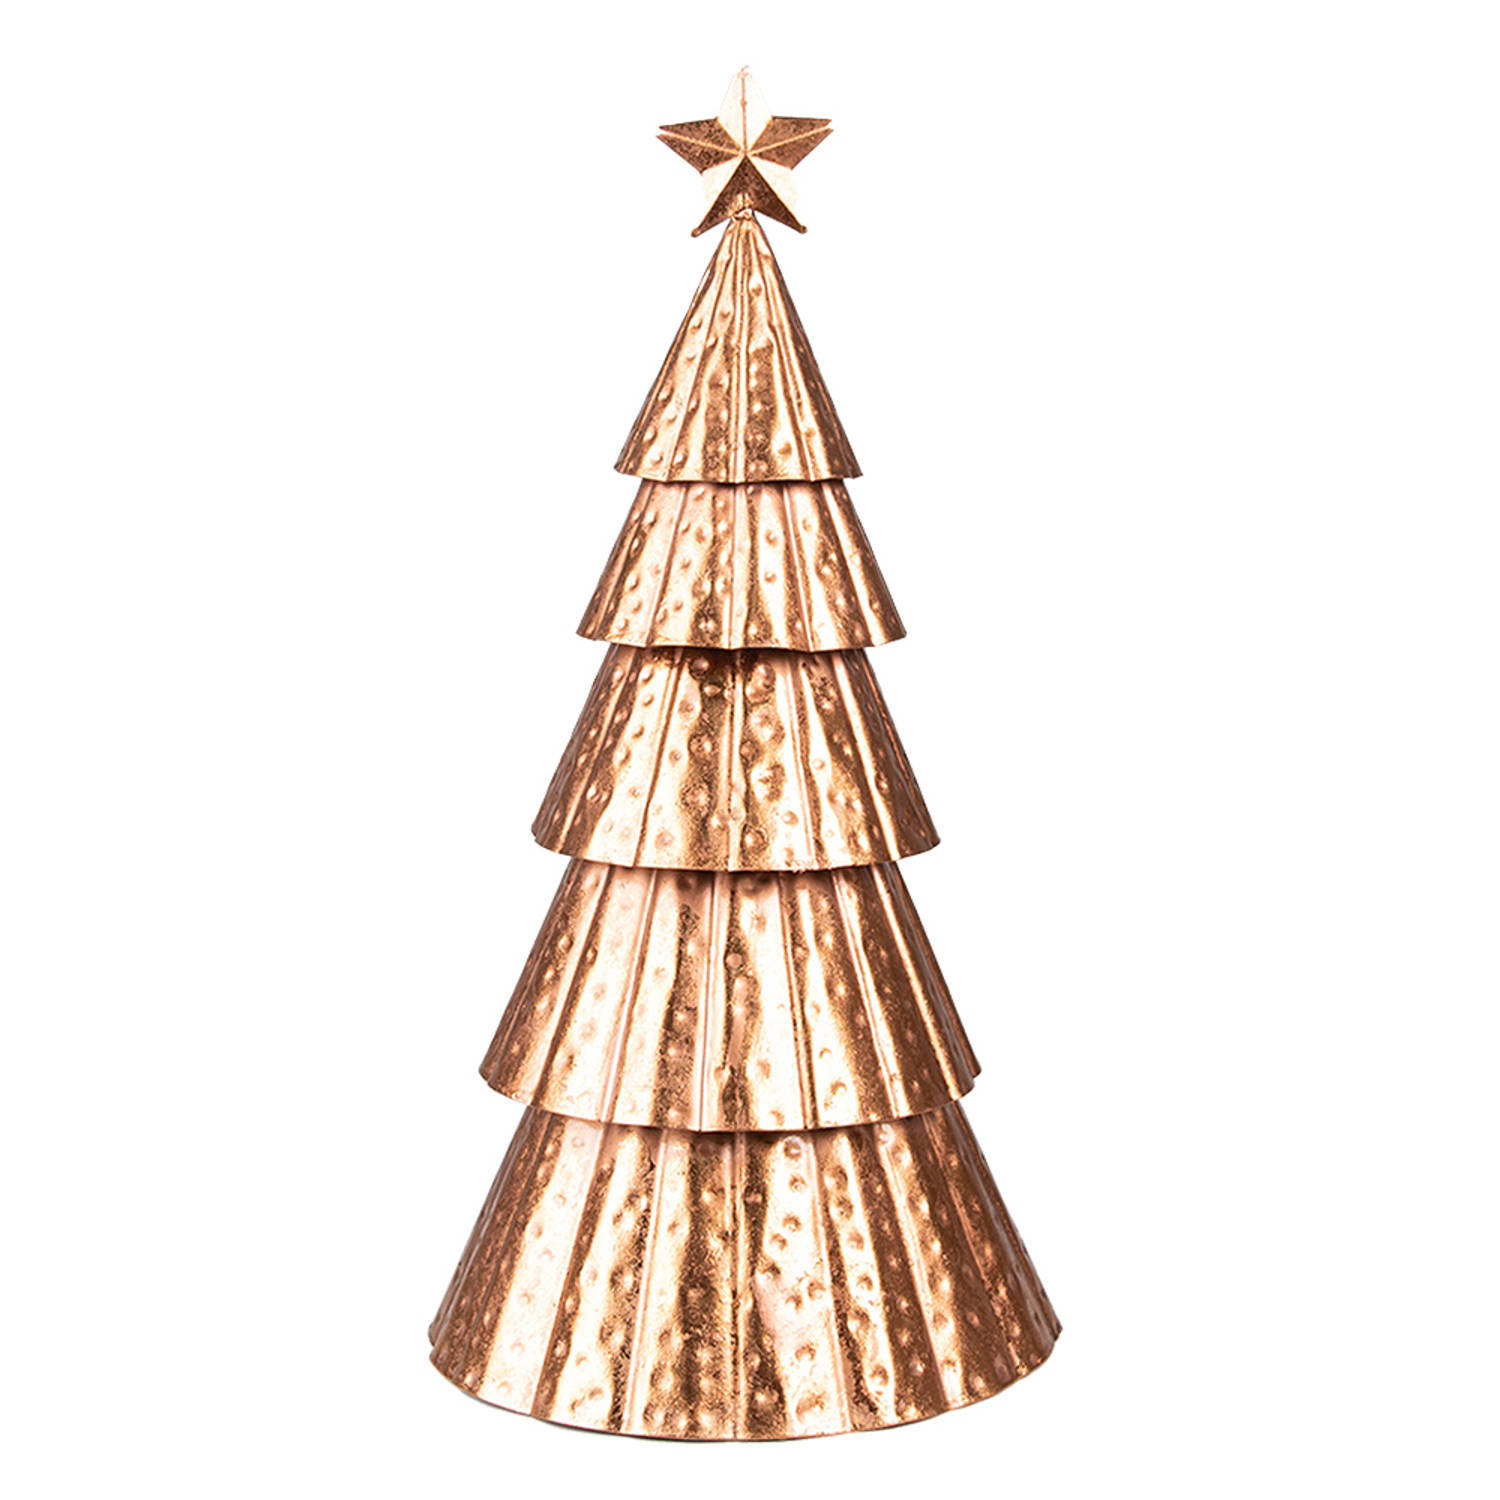 HAES DECO - Decoratieve Kerstboom - Formaat Ø 18x38 cm - Kleur Koperkleurig - Materiaal Ijzer - Kerstversiering, Kerstdecoratie